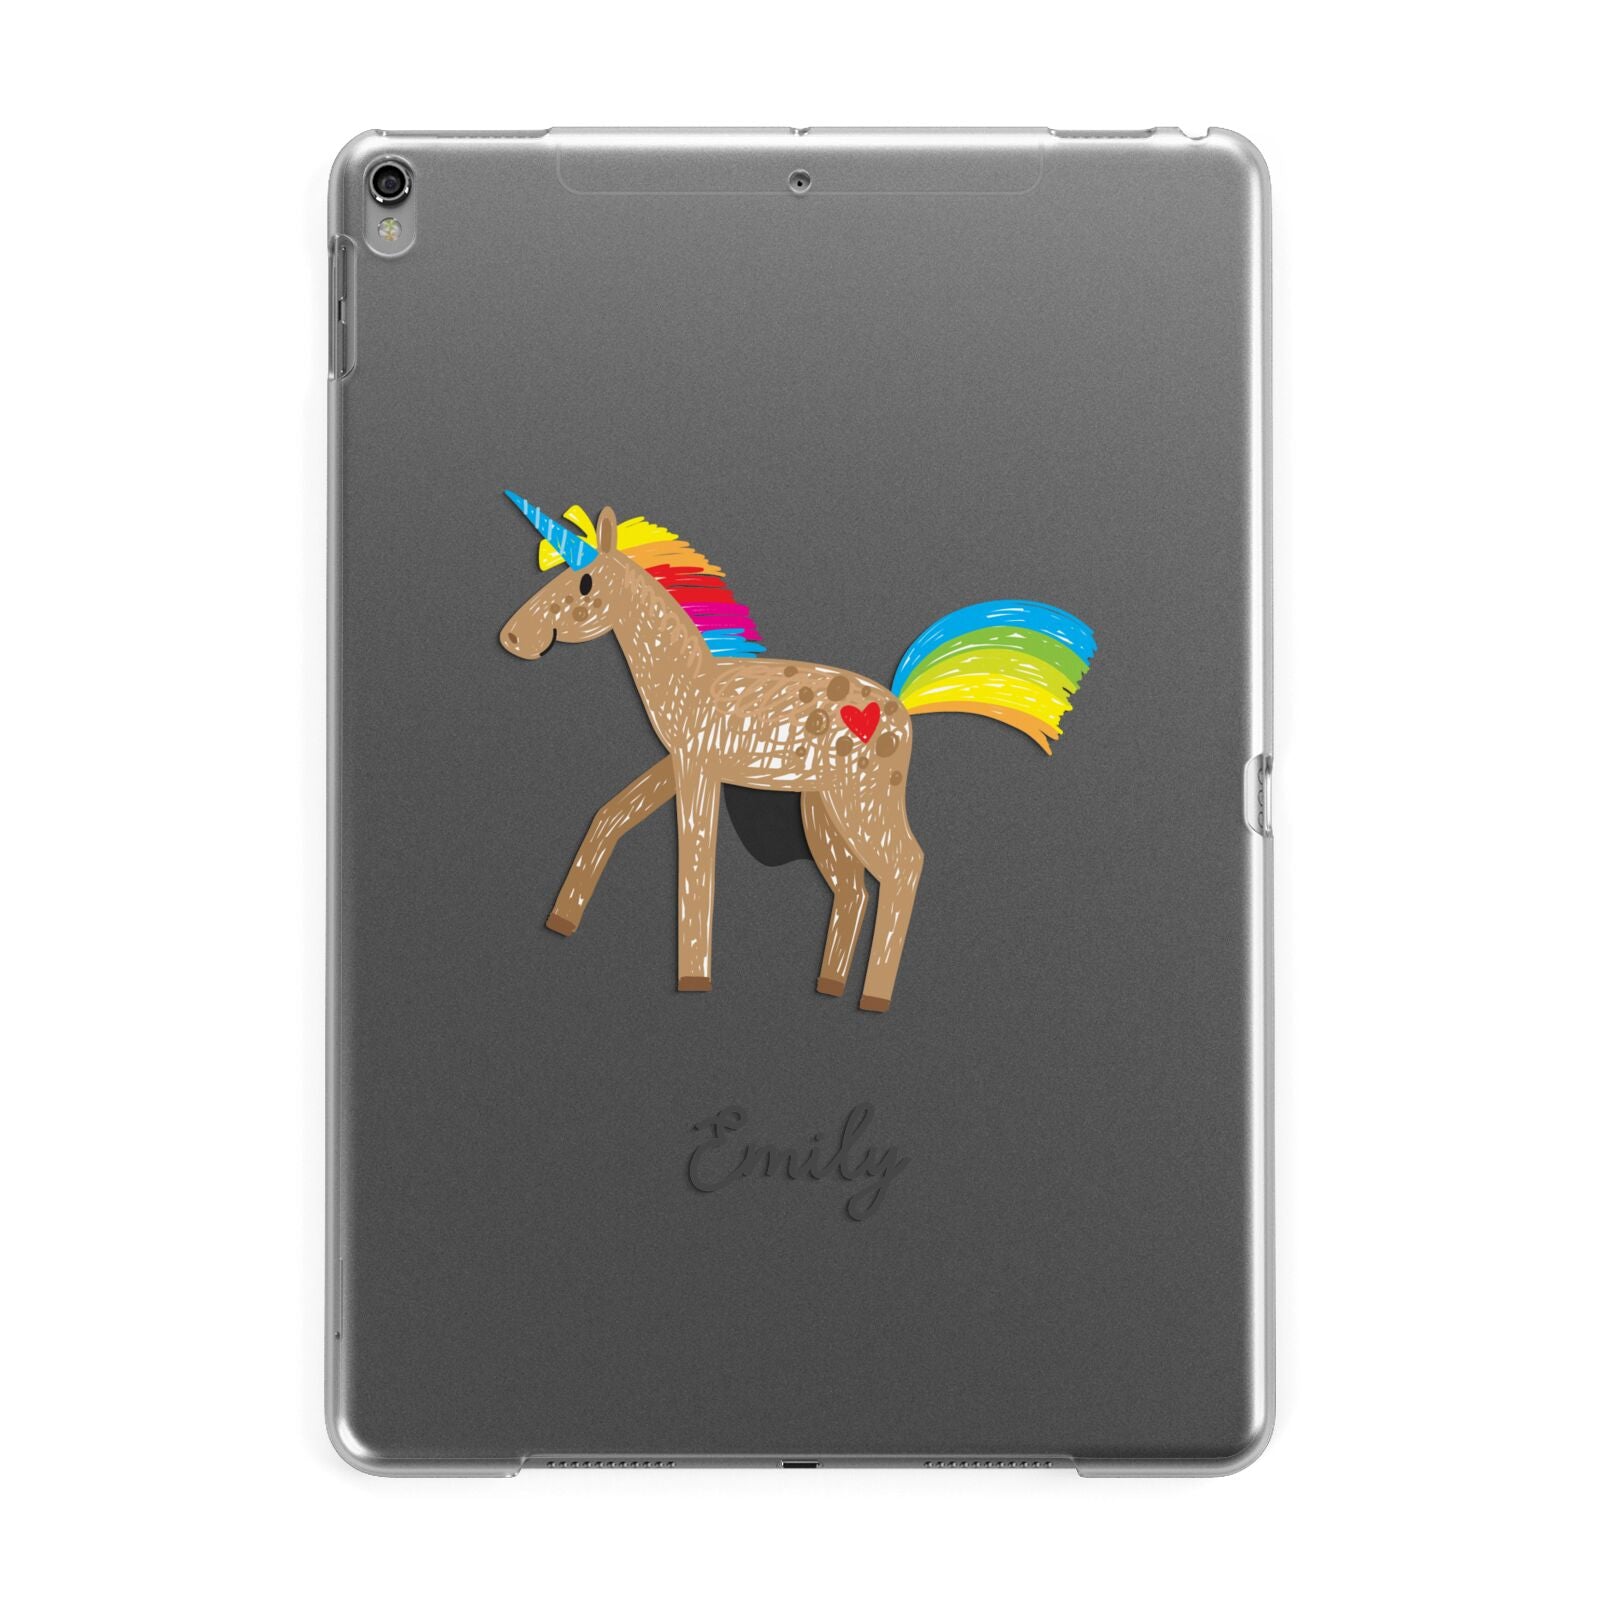 Personalised Unicorn with Name Apple iPad Grey Case